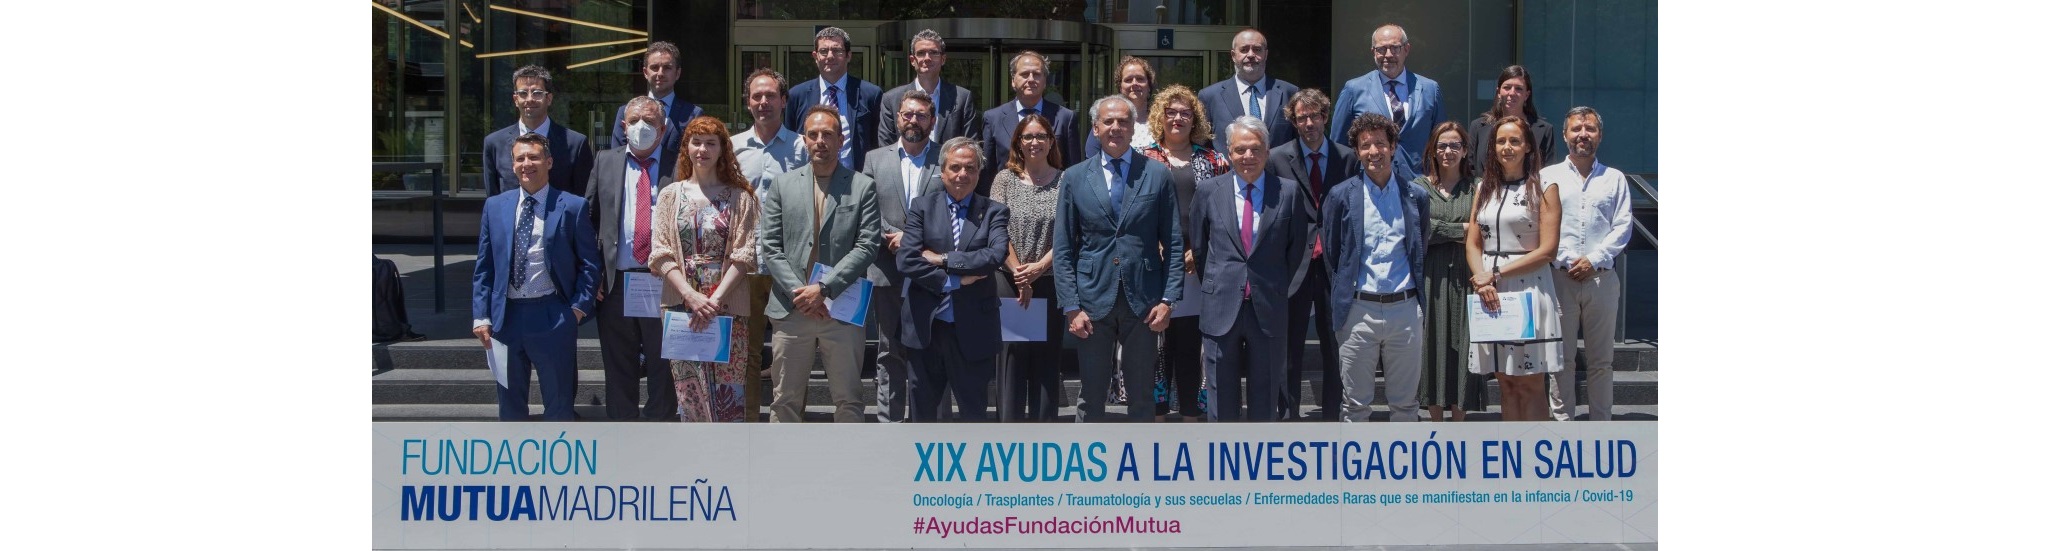 Dos proyectos liderados por investigadores del i+12 beneficiarios de una Ayuda a la Investigación en Salud de la Fundación Mutua Madrileña